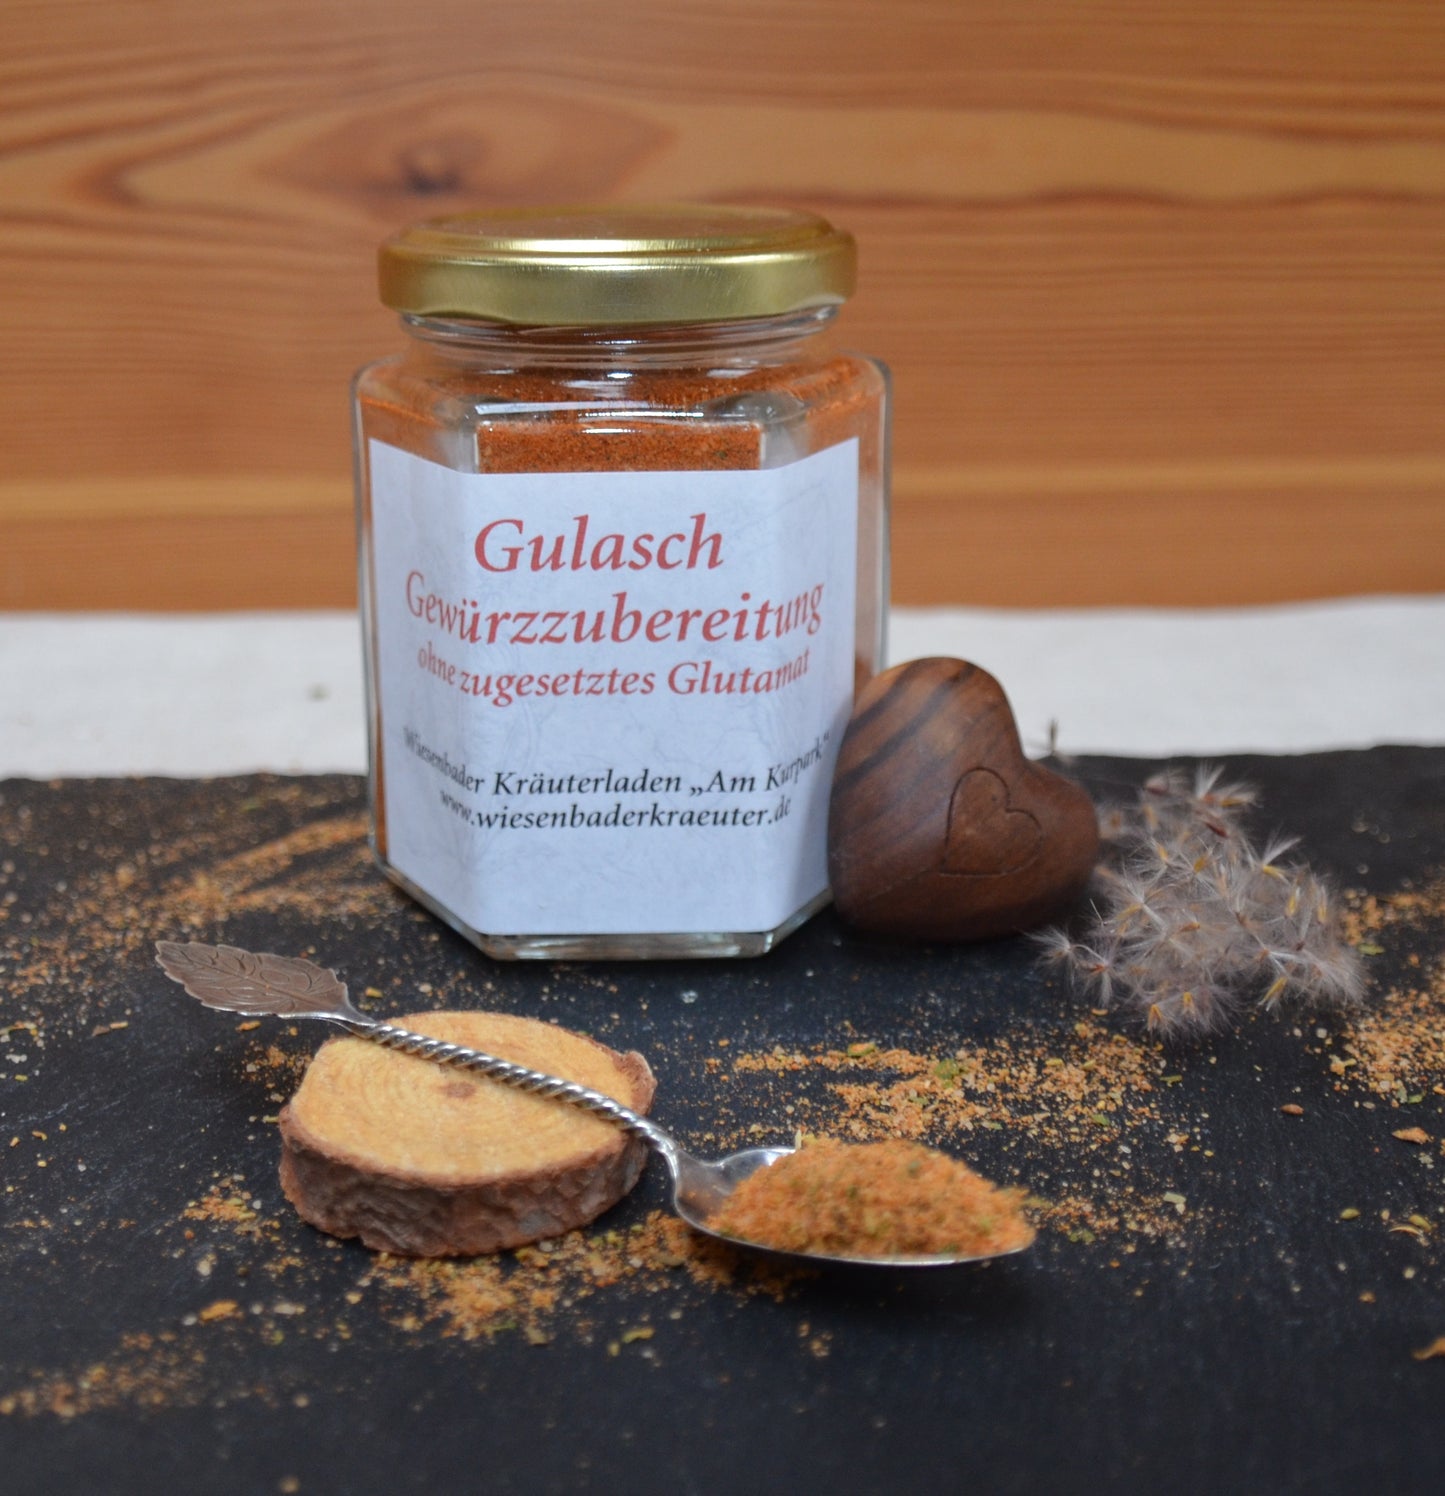 Gulasch-Gewürzzubereitung ohne zugesetztes Glutamat